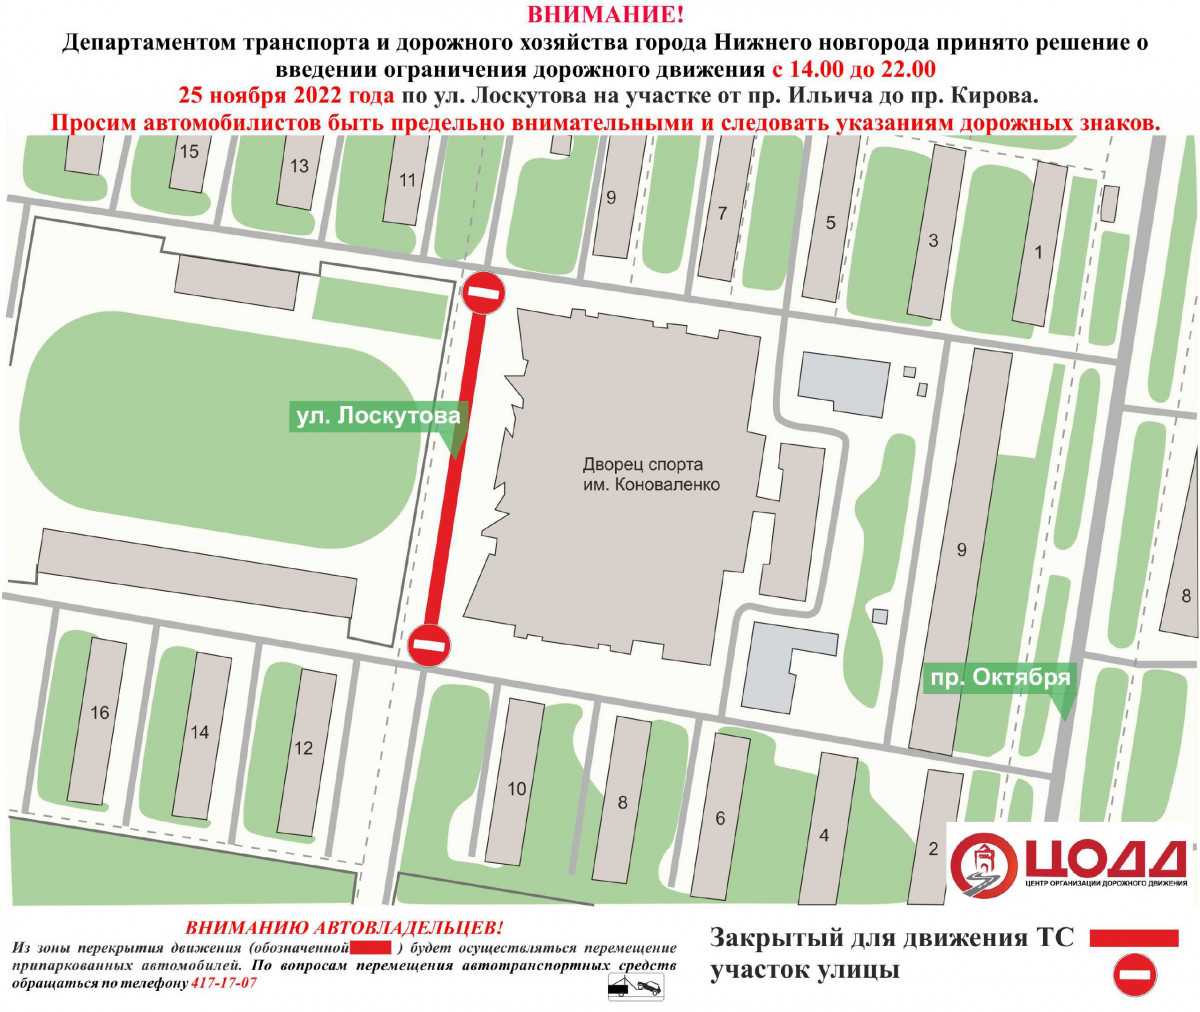 Движение по улице Лоскутова ограничат в Нижнем Новгороде 25 ноября